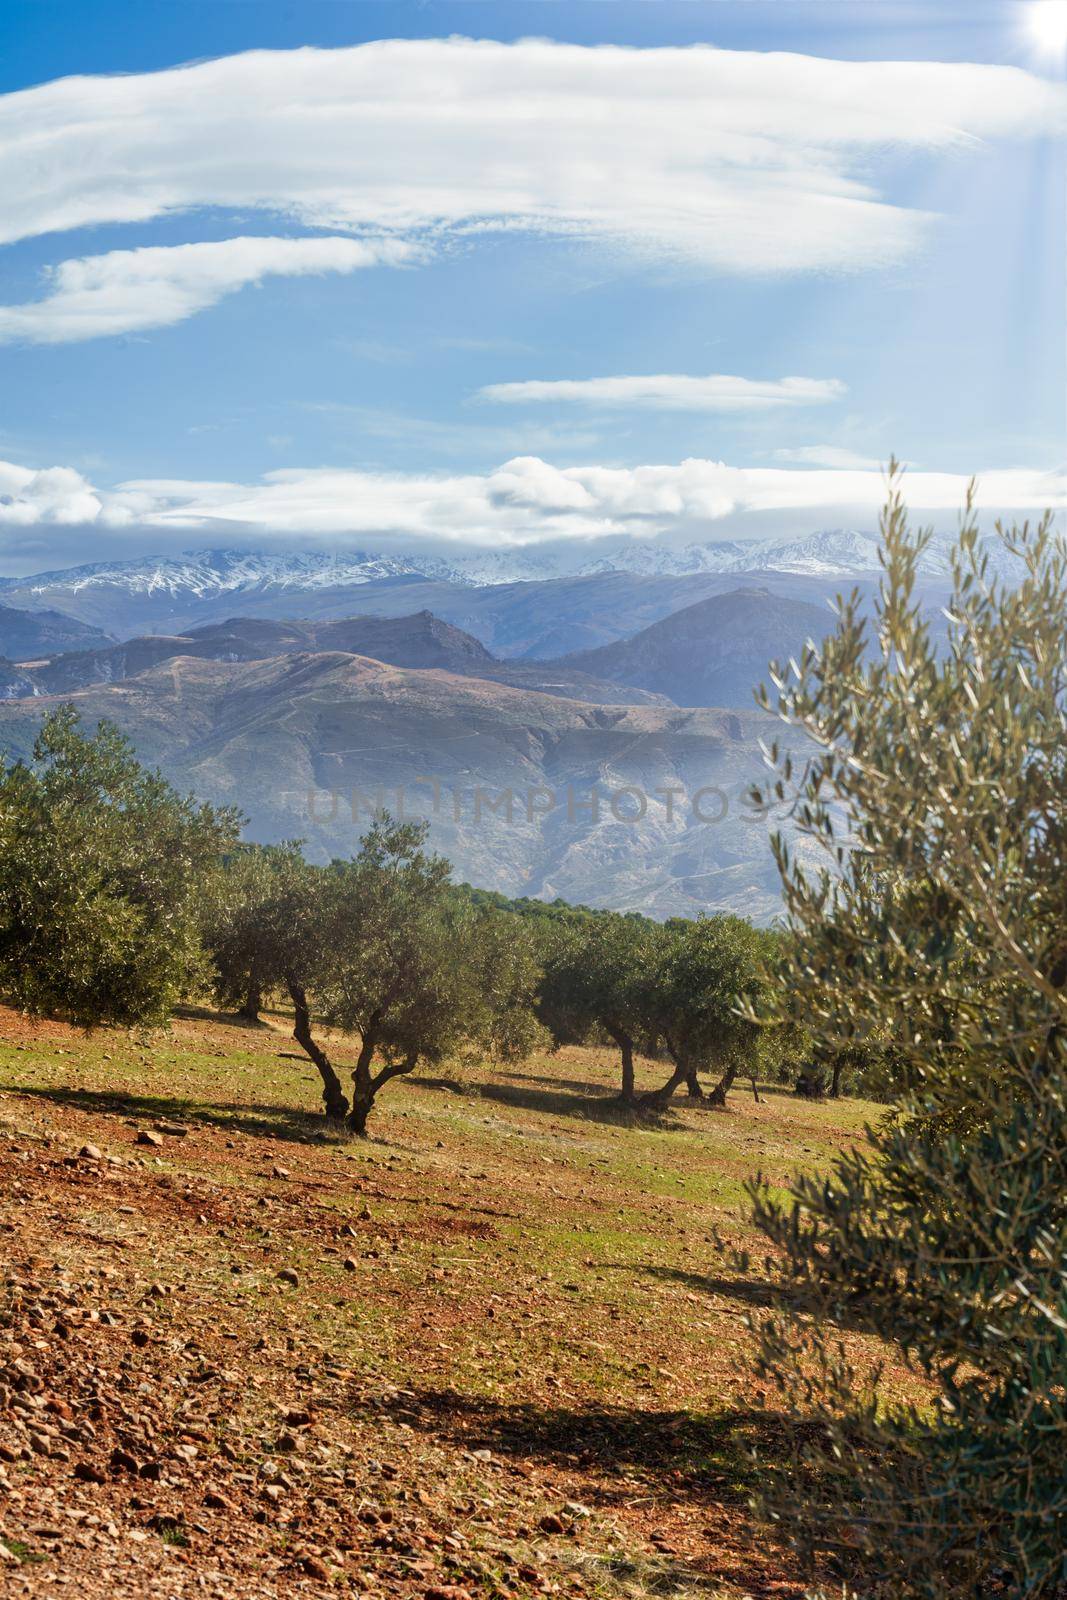 Sierra Nevada as seen from the olive groves in the Llano de la Perdiz in Granada by javiindy